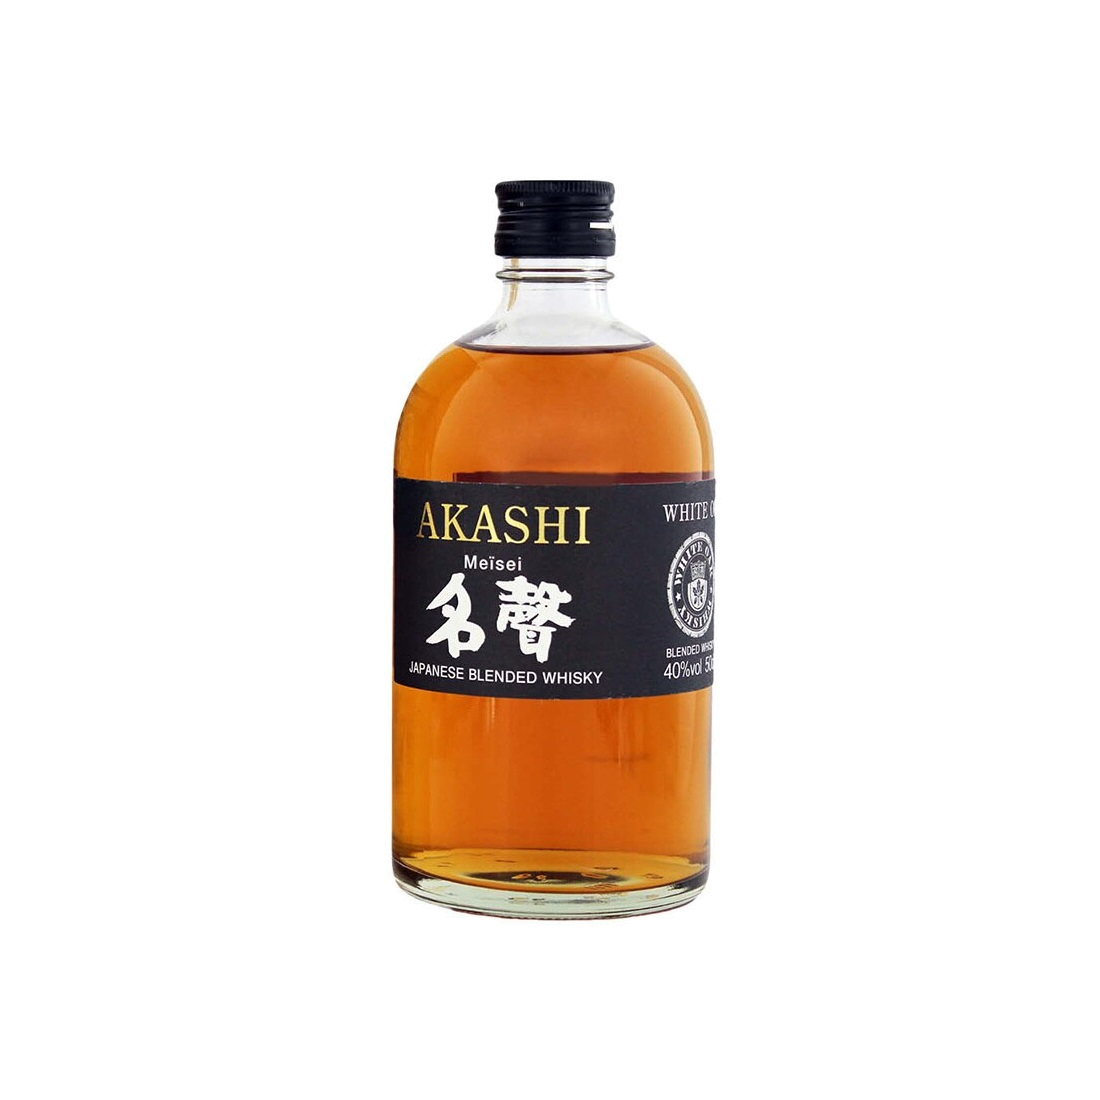 Akashi Meisei Japanese Blended Whisky 0,5 l 